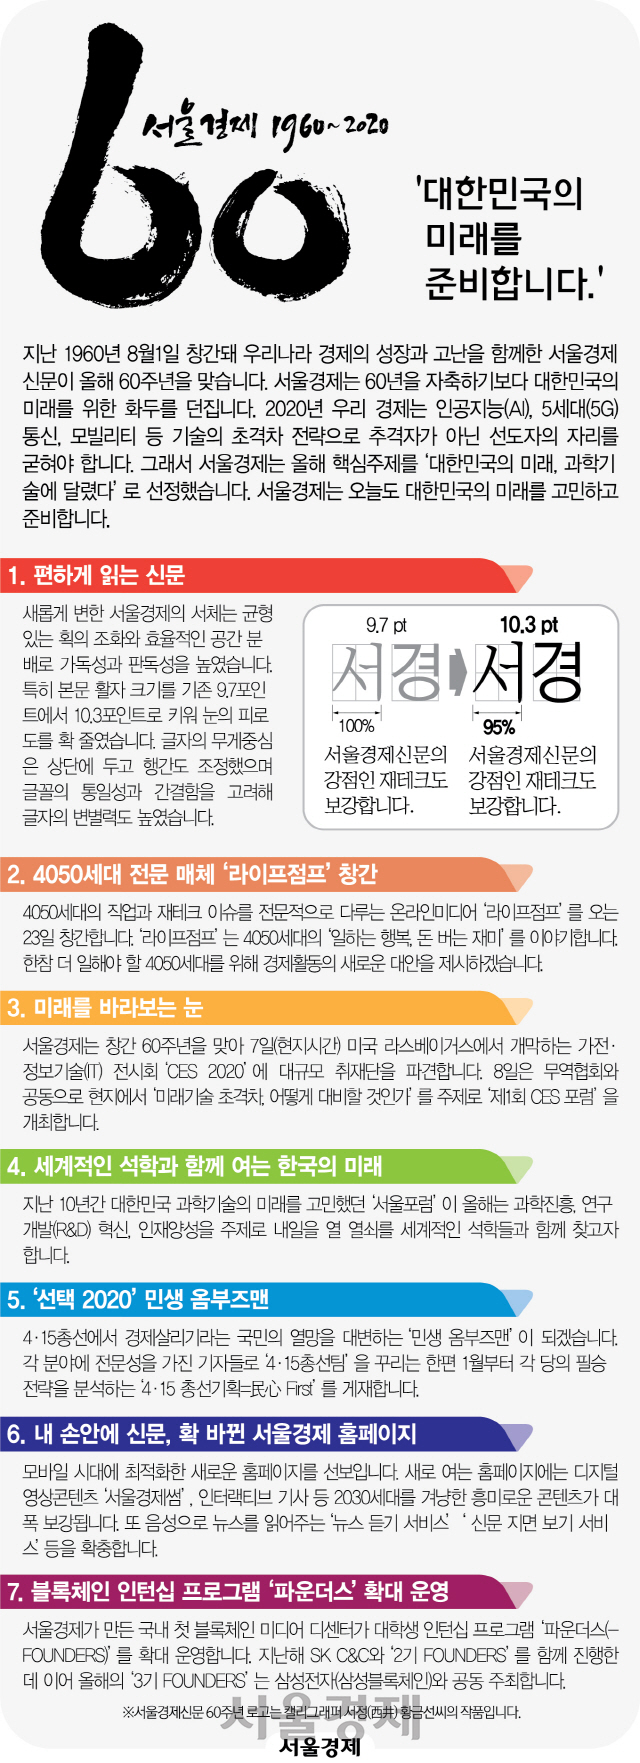 [알립니다] 서울경제 창간 60년...대한민국의 미래를 준비합니다